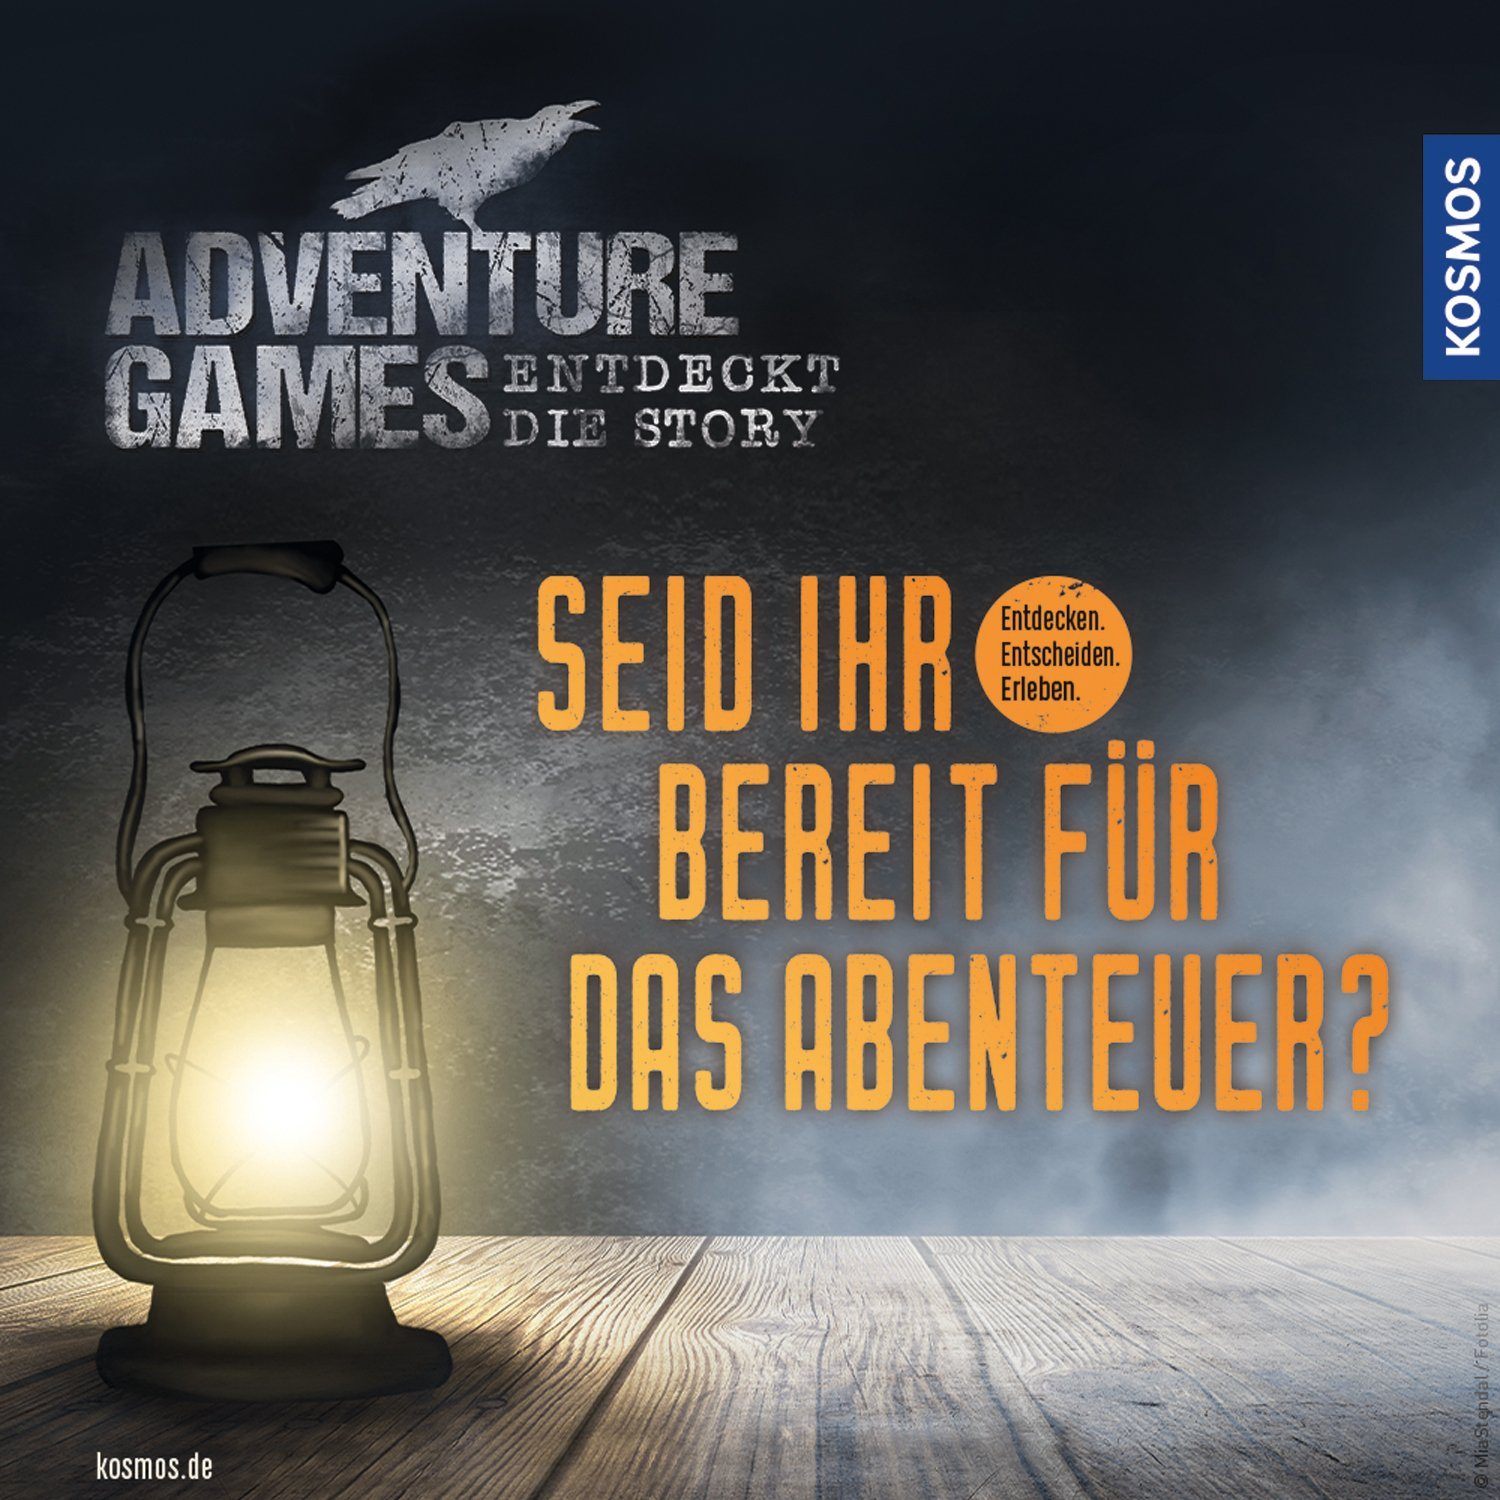 Games Kosmos Made KOSMOS Das Verlag Gesellschaftsspiel in Spiel, Germany - Adventure Verlies,